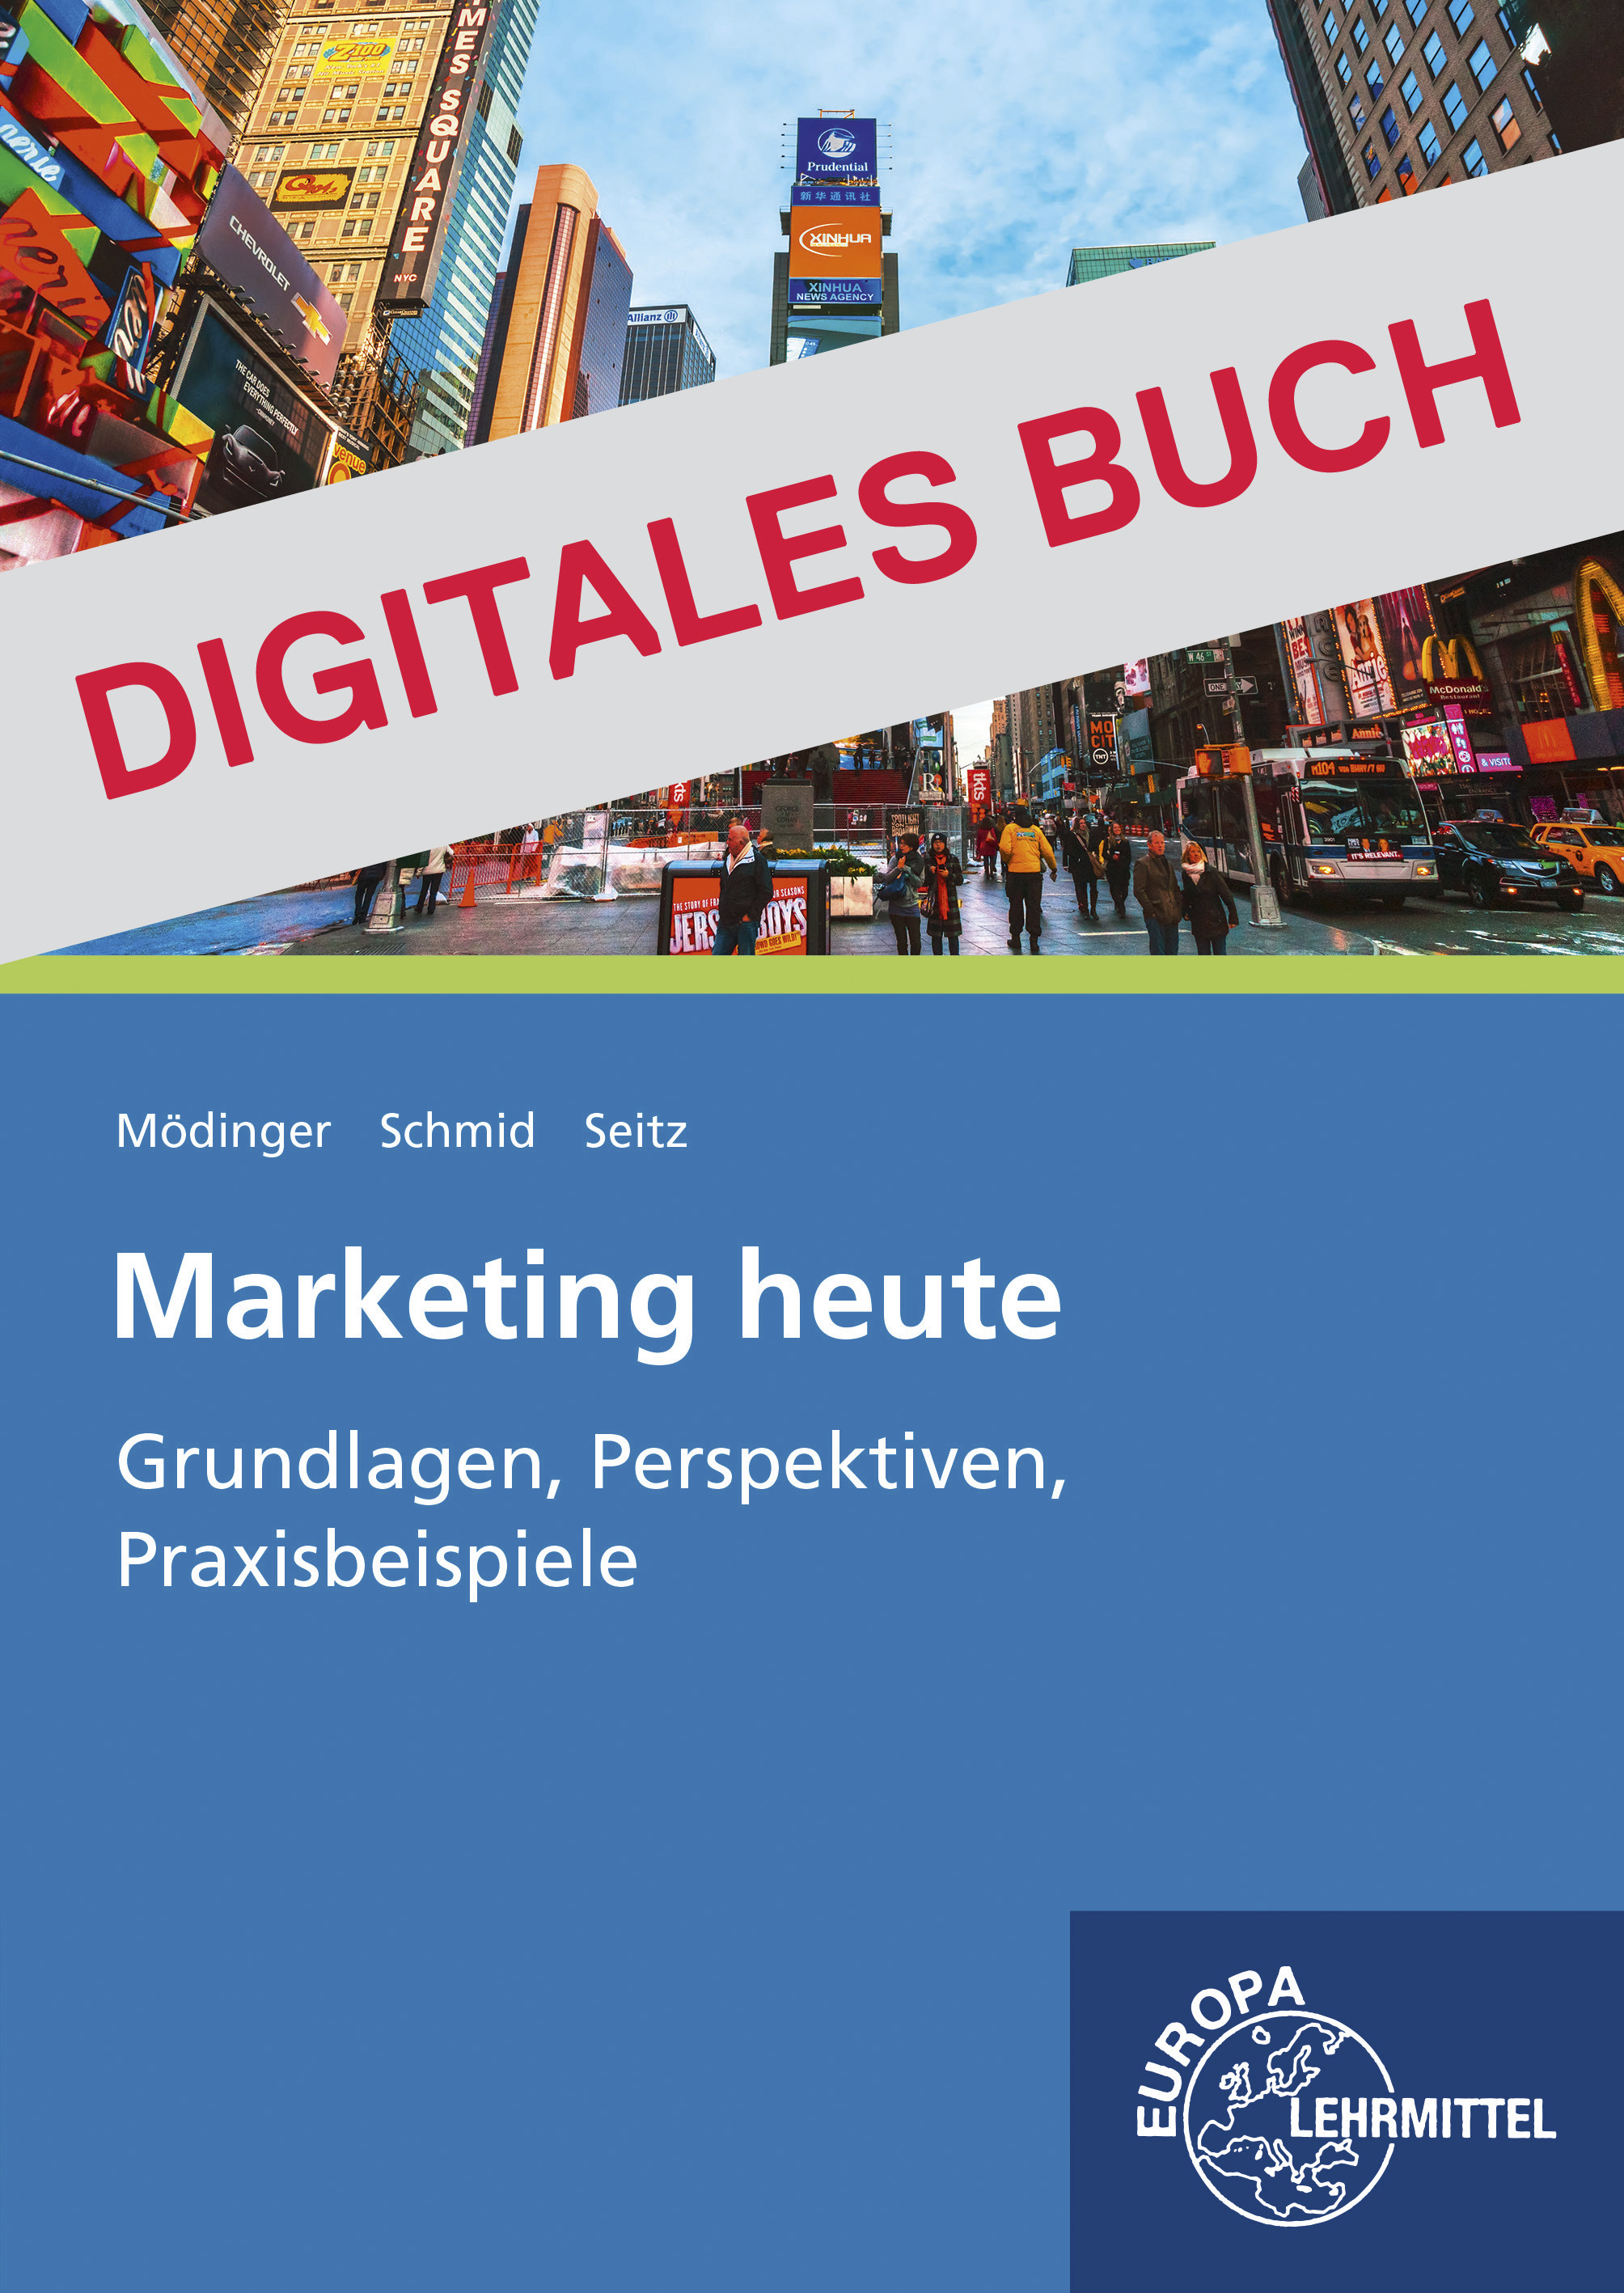 Marketing heute Grundlagen, Perspektiven, Praxisbeispiele - Digitales Buch